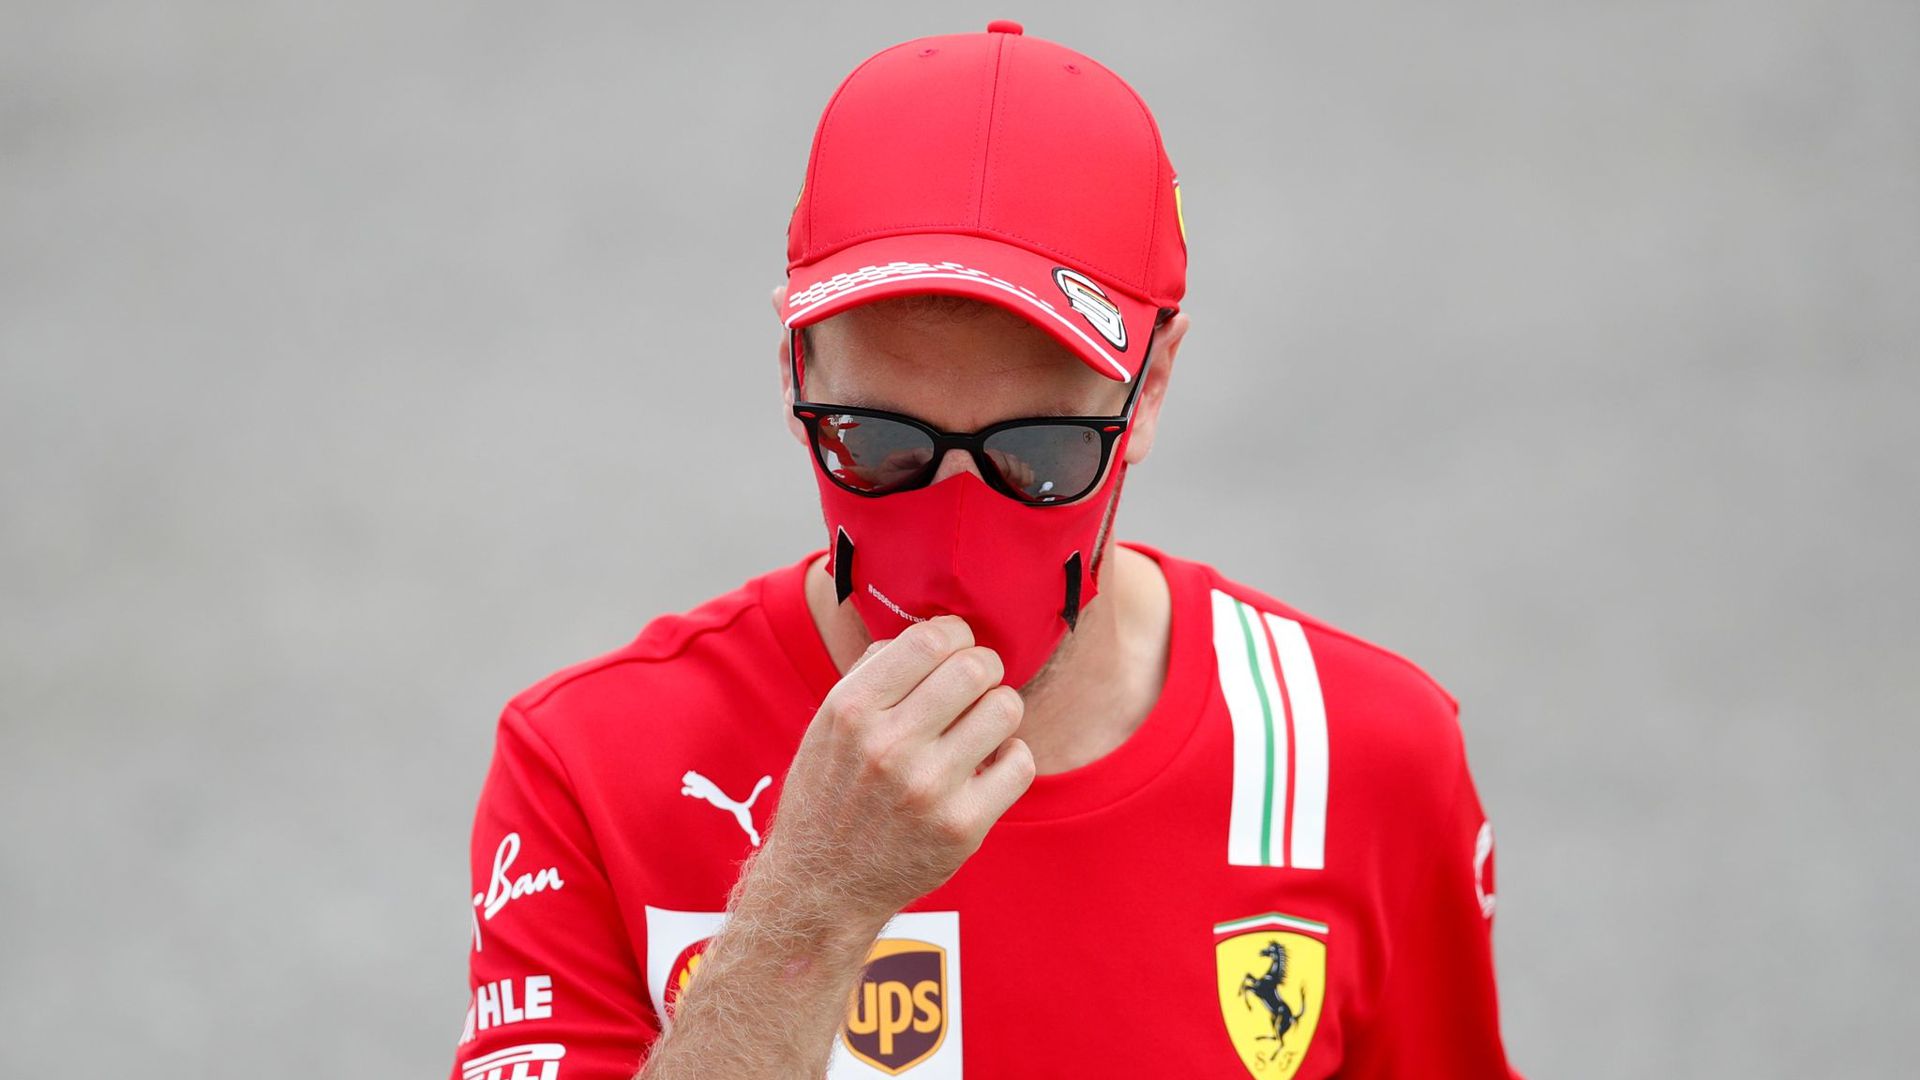 Entspannt mit Lesen abseits der Formel-1-Strecke: Ferrari-Pilot Sebastian Vettel.